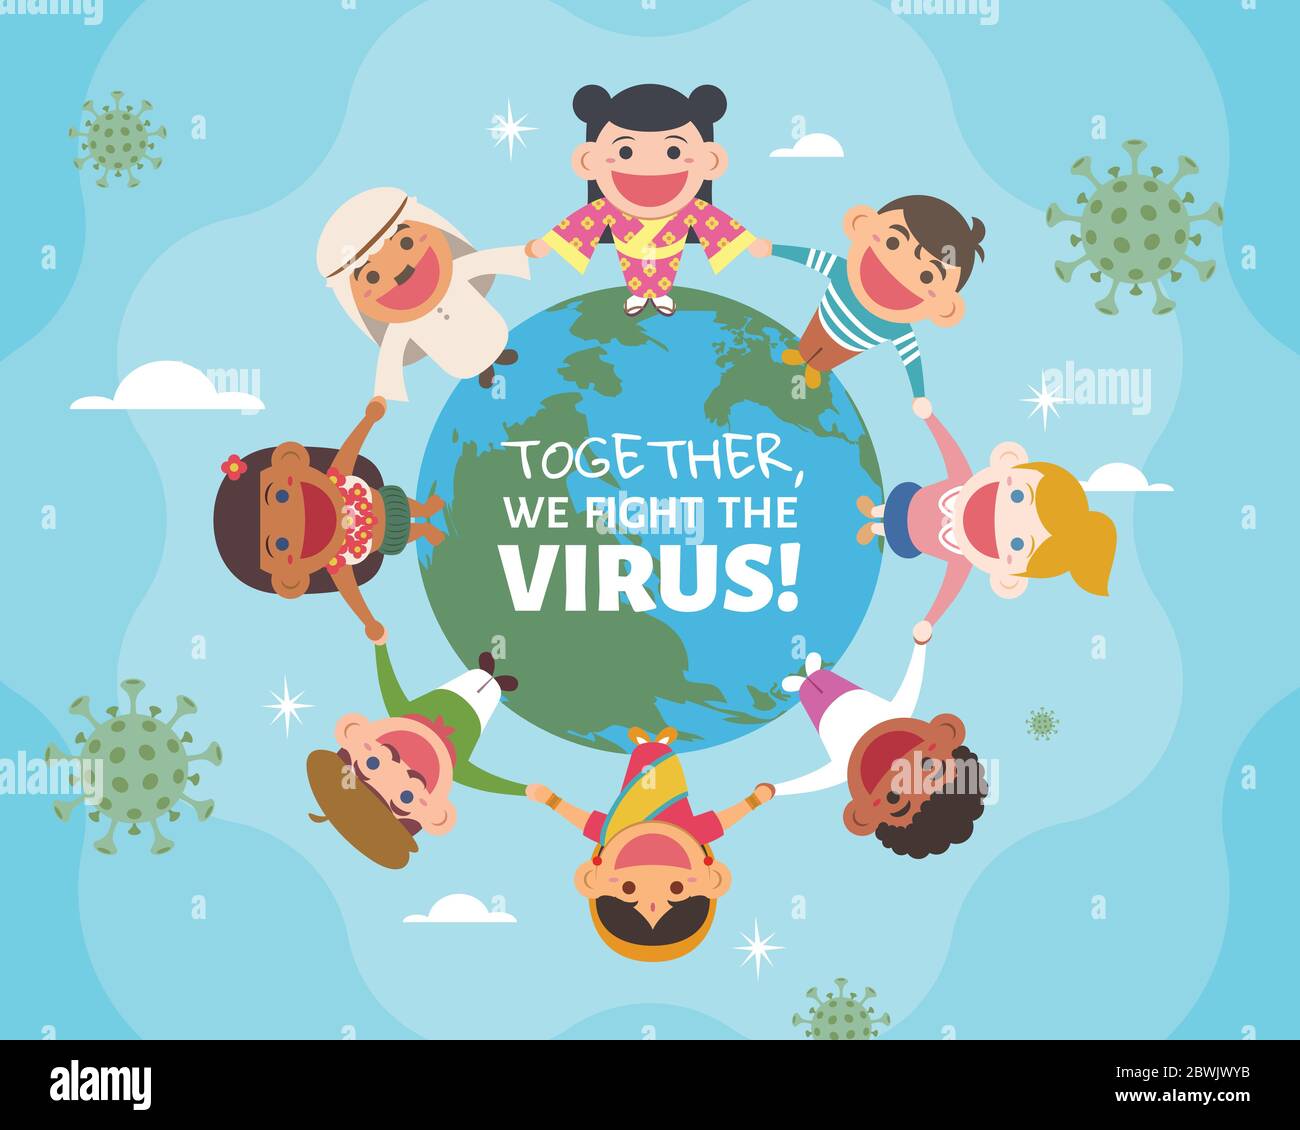 Des enfants multiculturels du monde entier se tenant ensemble sur la planète Terre et tenant les mains, concept de combattre le virus ensemble Illustration de Vecteur